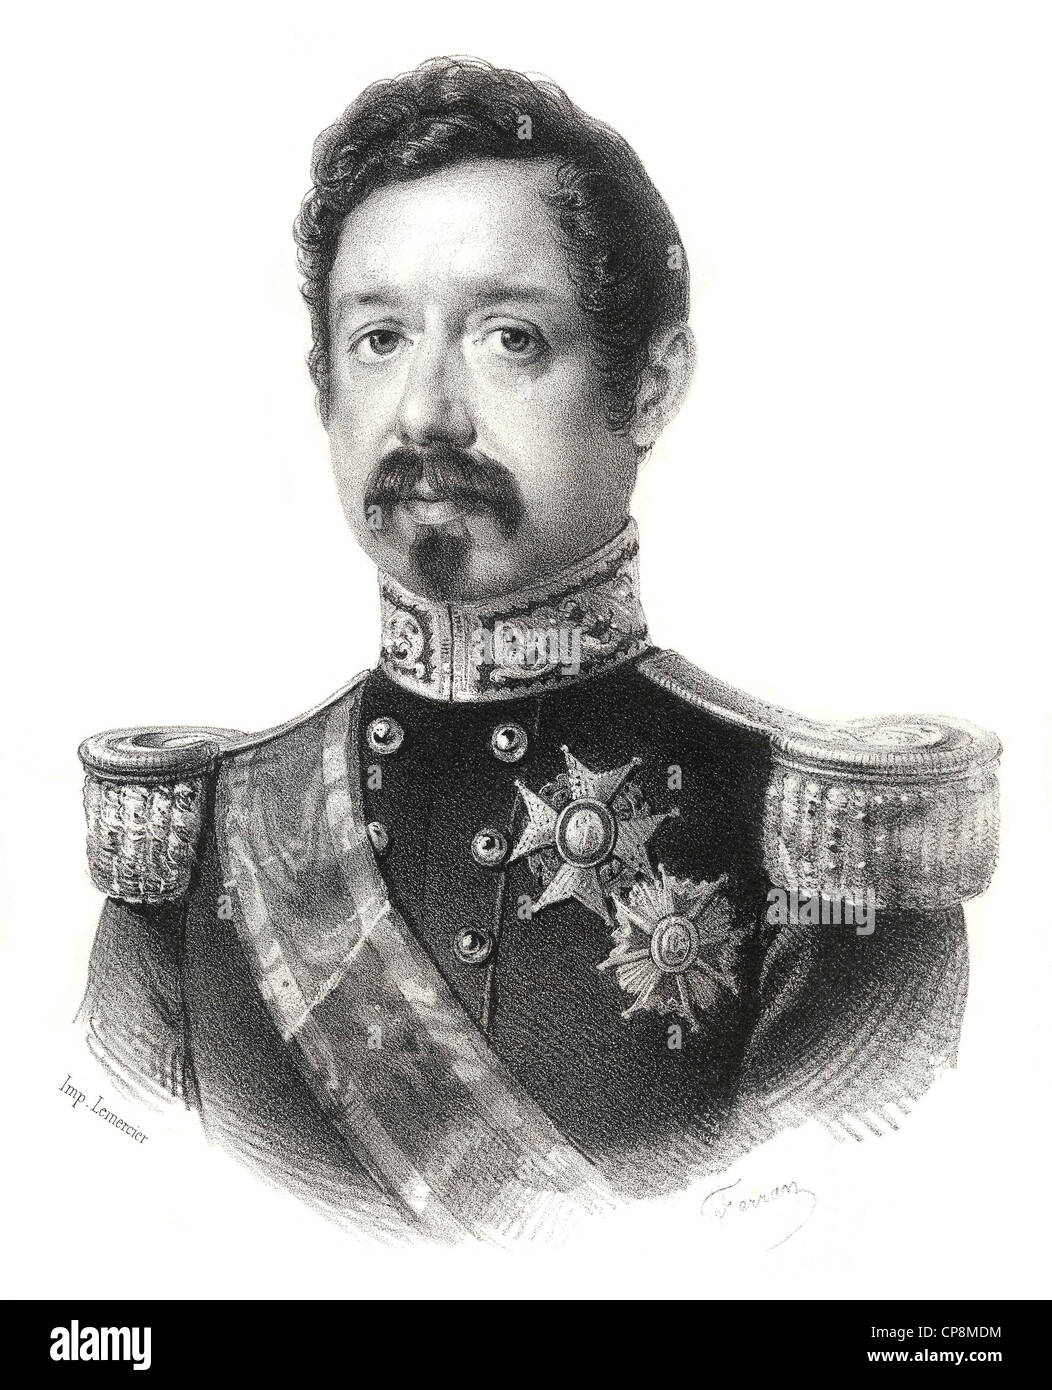 L'homme politique et militaire espagnol Ramón María Na, duc de Valence, gravure sur acier historique du 19ème siècle, Historis Banque D'Images